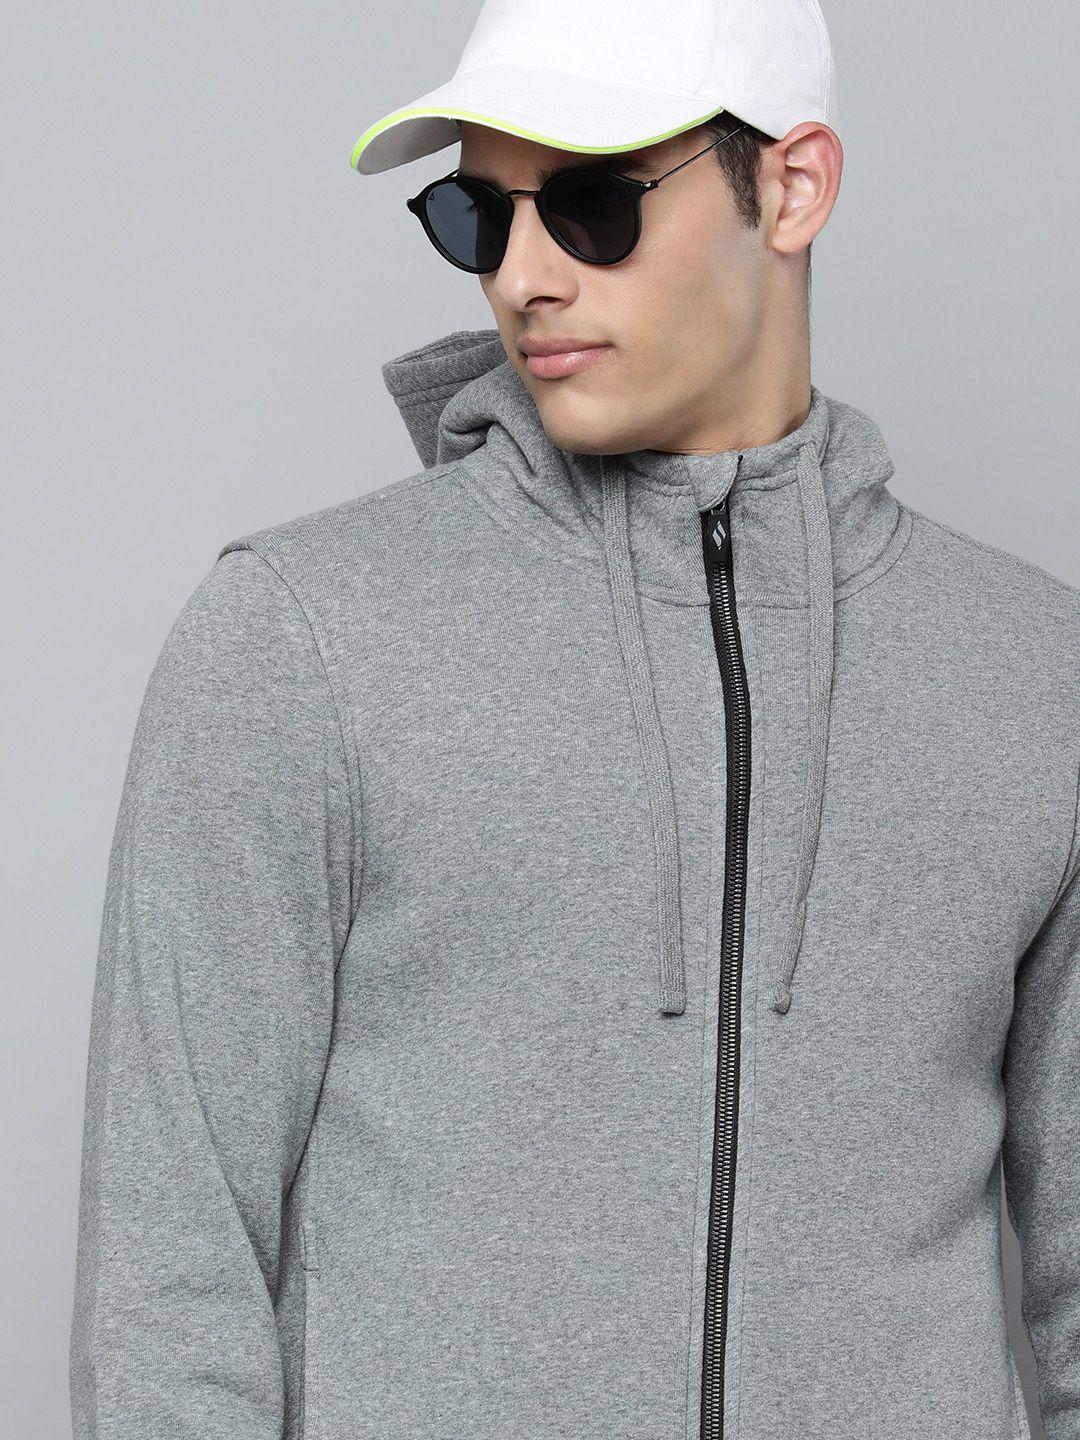 skechers men grey melange solid hooded sweats lounge sherpa sweatshirt